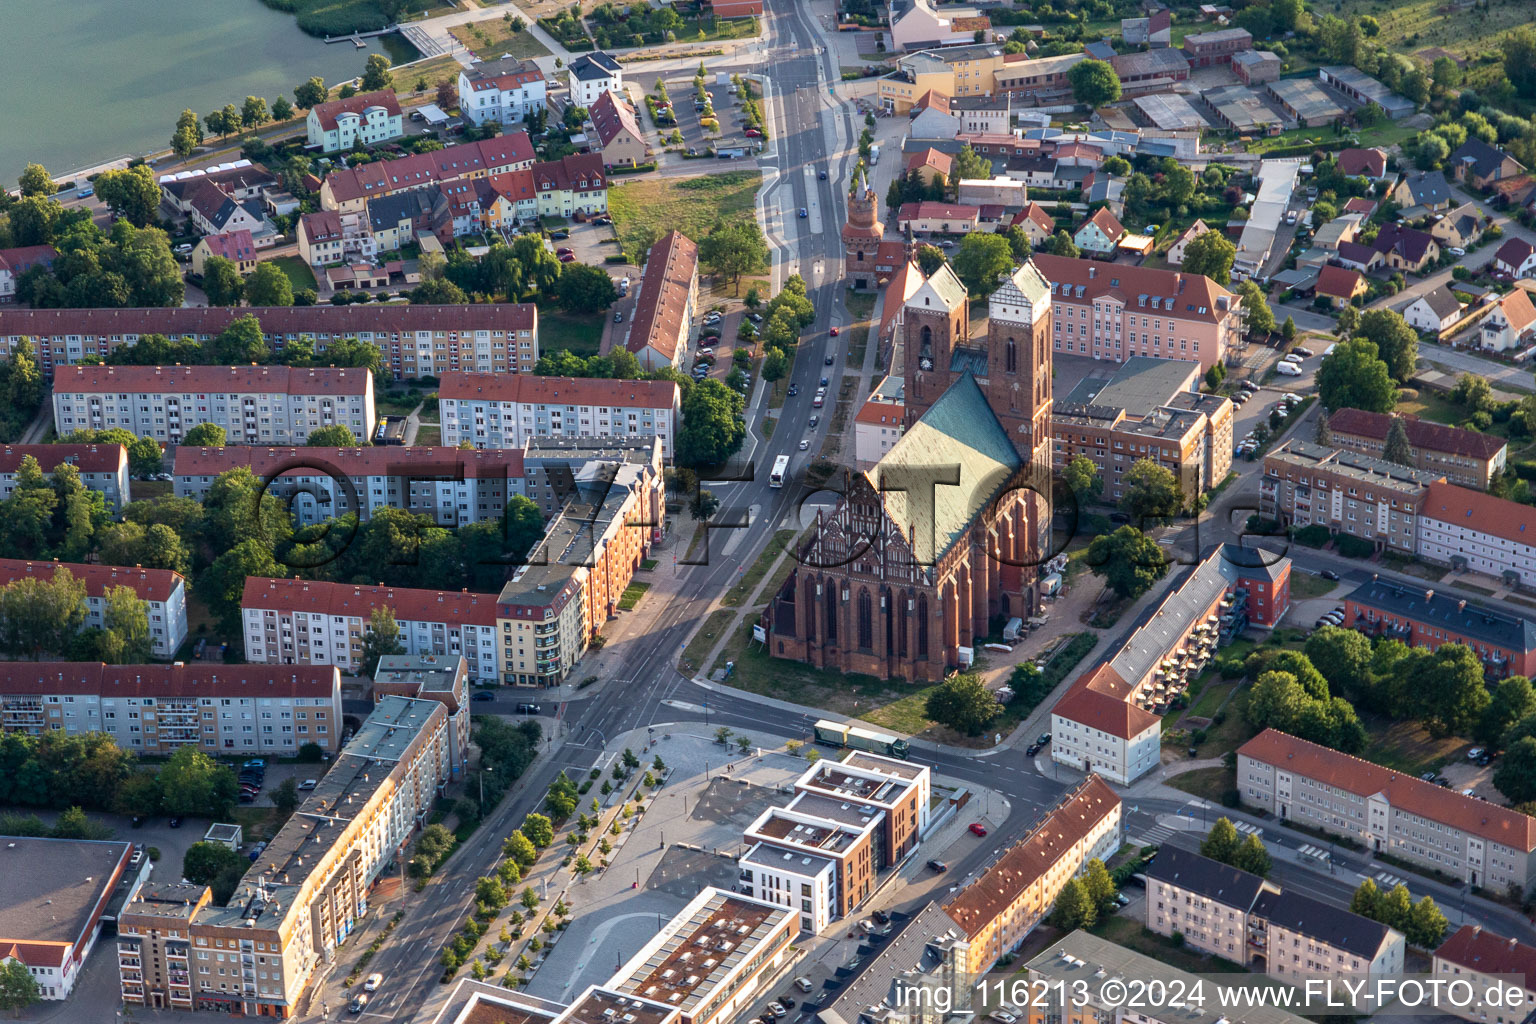 Vue aérienne de L'église St. marie à Prenzlau dans le département Brandebourg, Allemagne